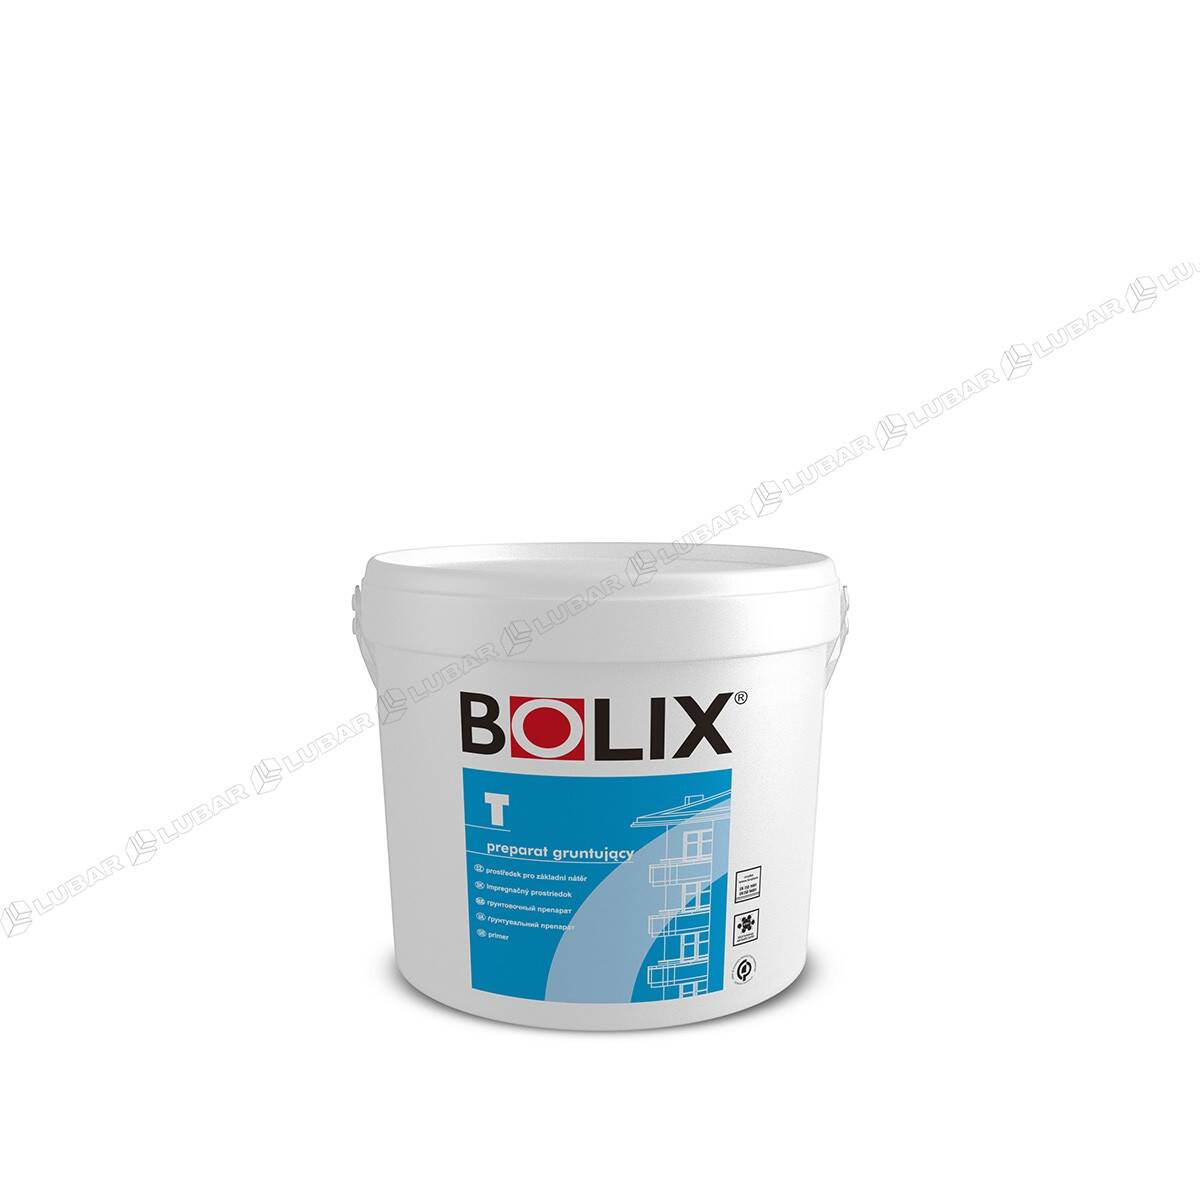 BOLIX T Preparat gruntujący wzmacniający podłoże 5kg